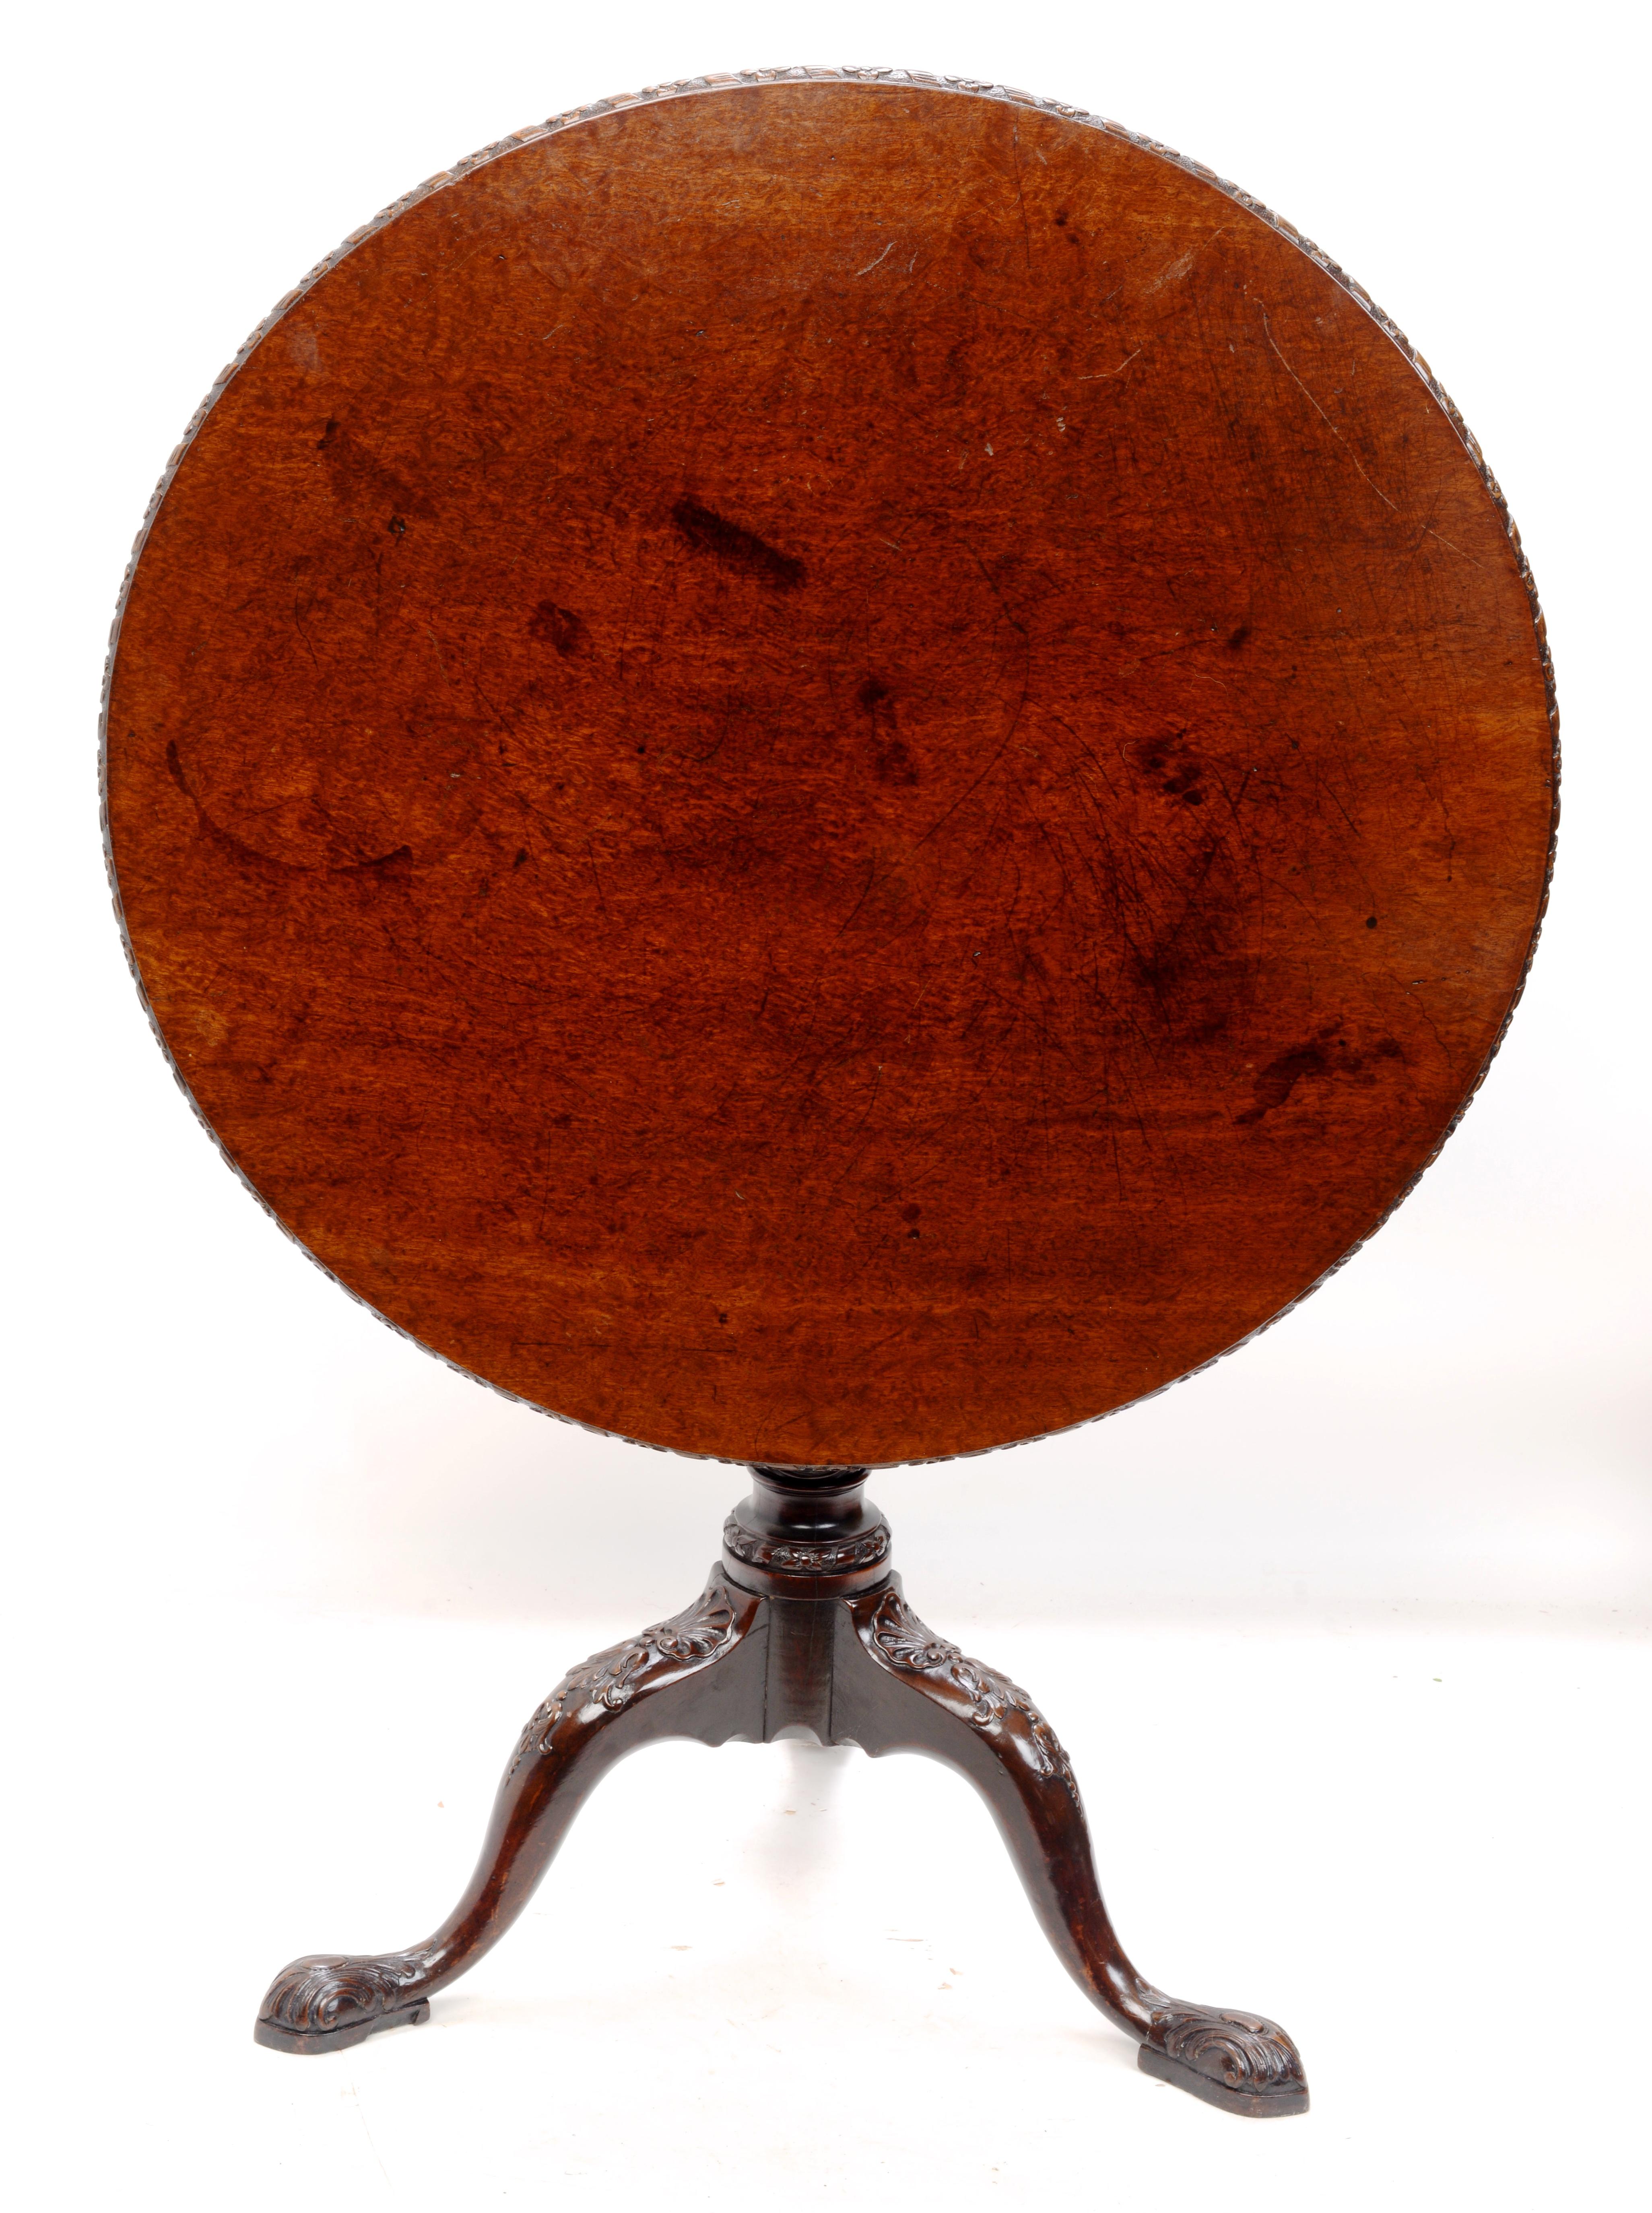 Table à thé tripode en acajou, inclinable et pivotante, datant de 1750, de marque Geo II Plum Pudding. Dessus, jambes, piédestal et pieds magnifiquement sculptés. La table a une belle et riche patine. Le plateau circulaire présente une bordure